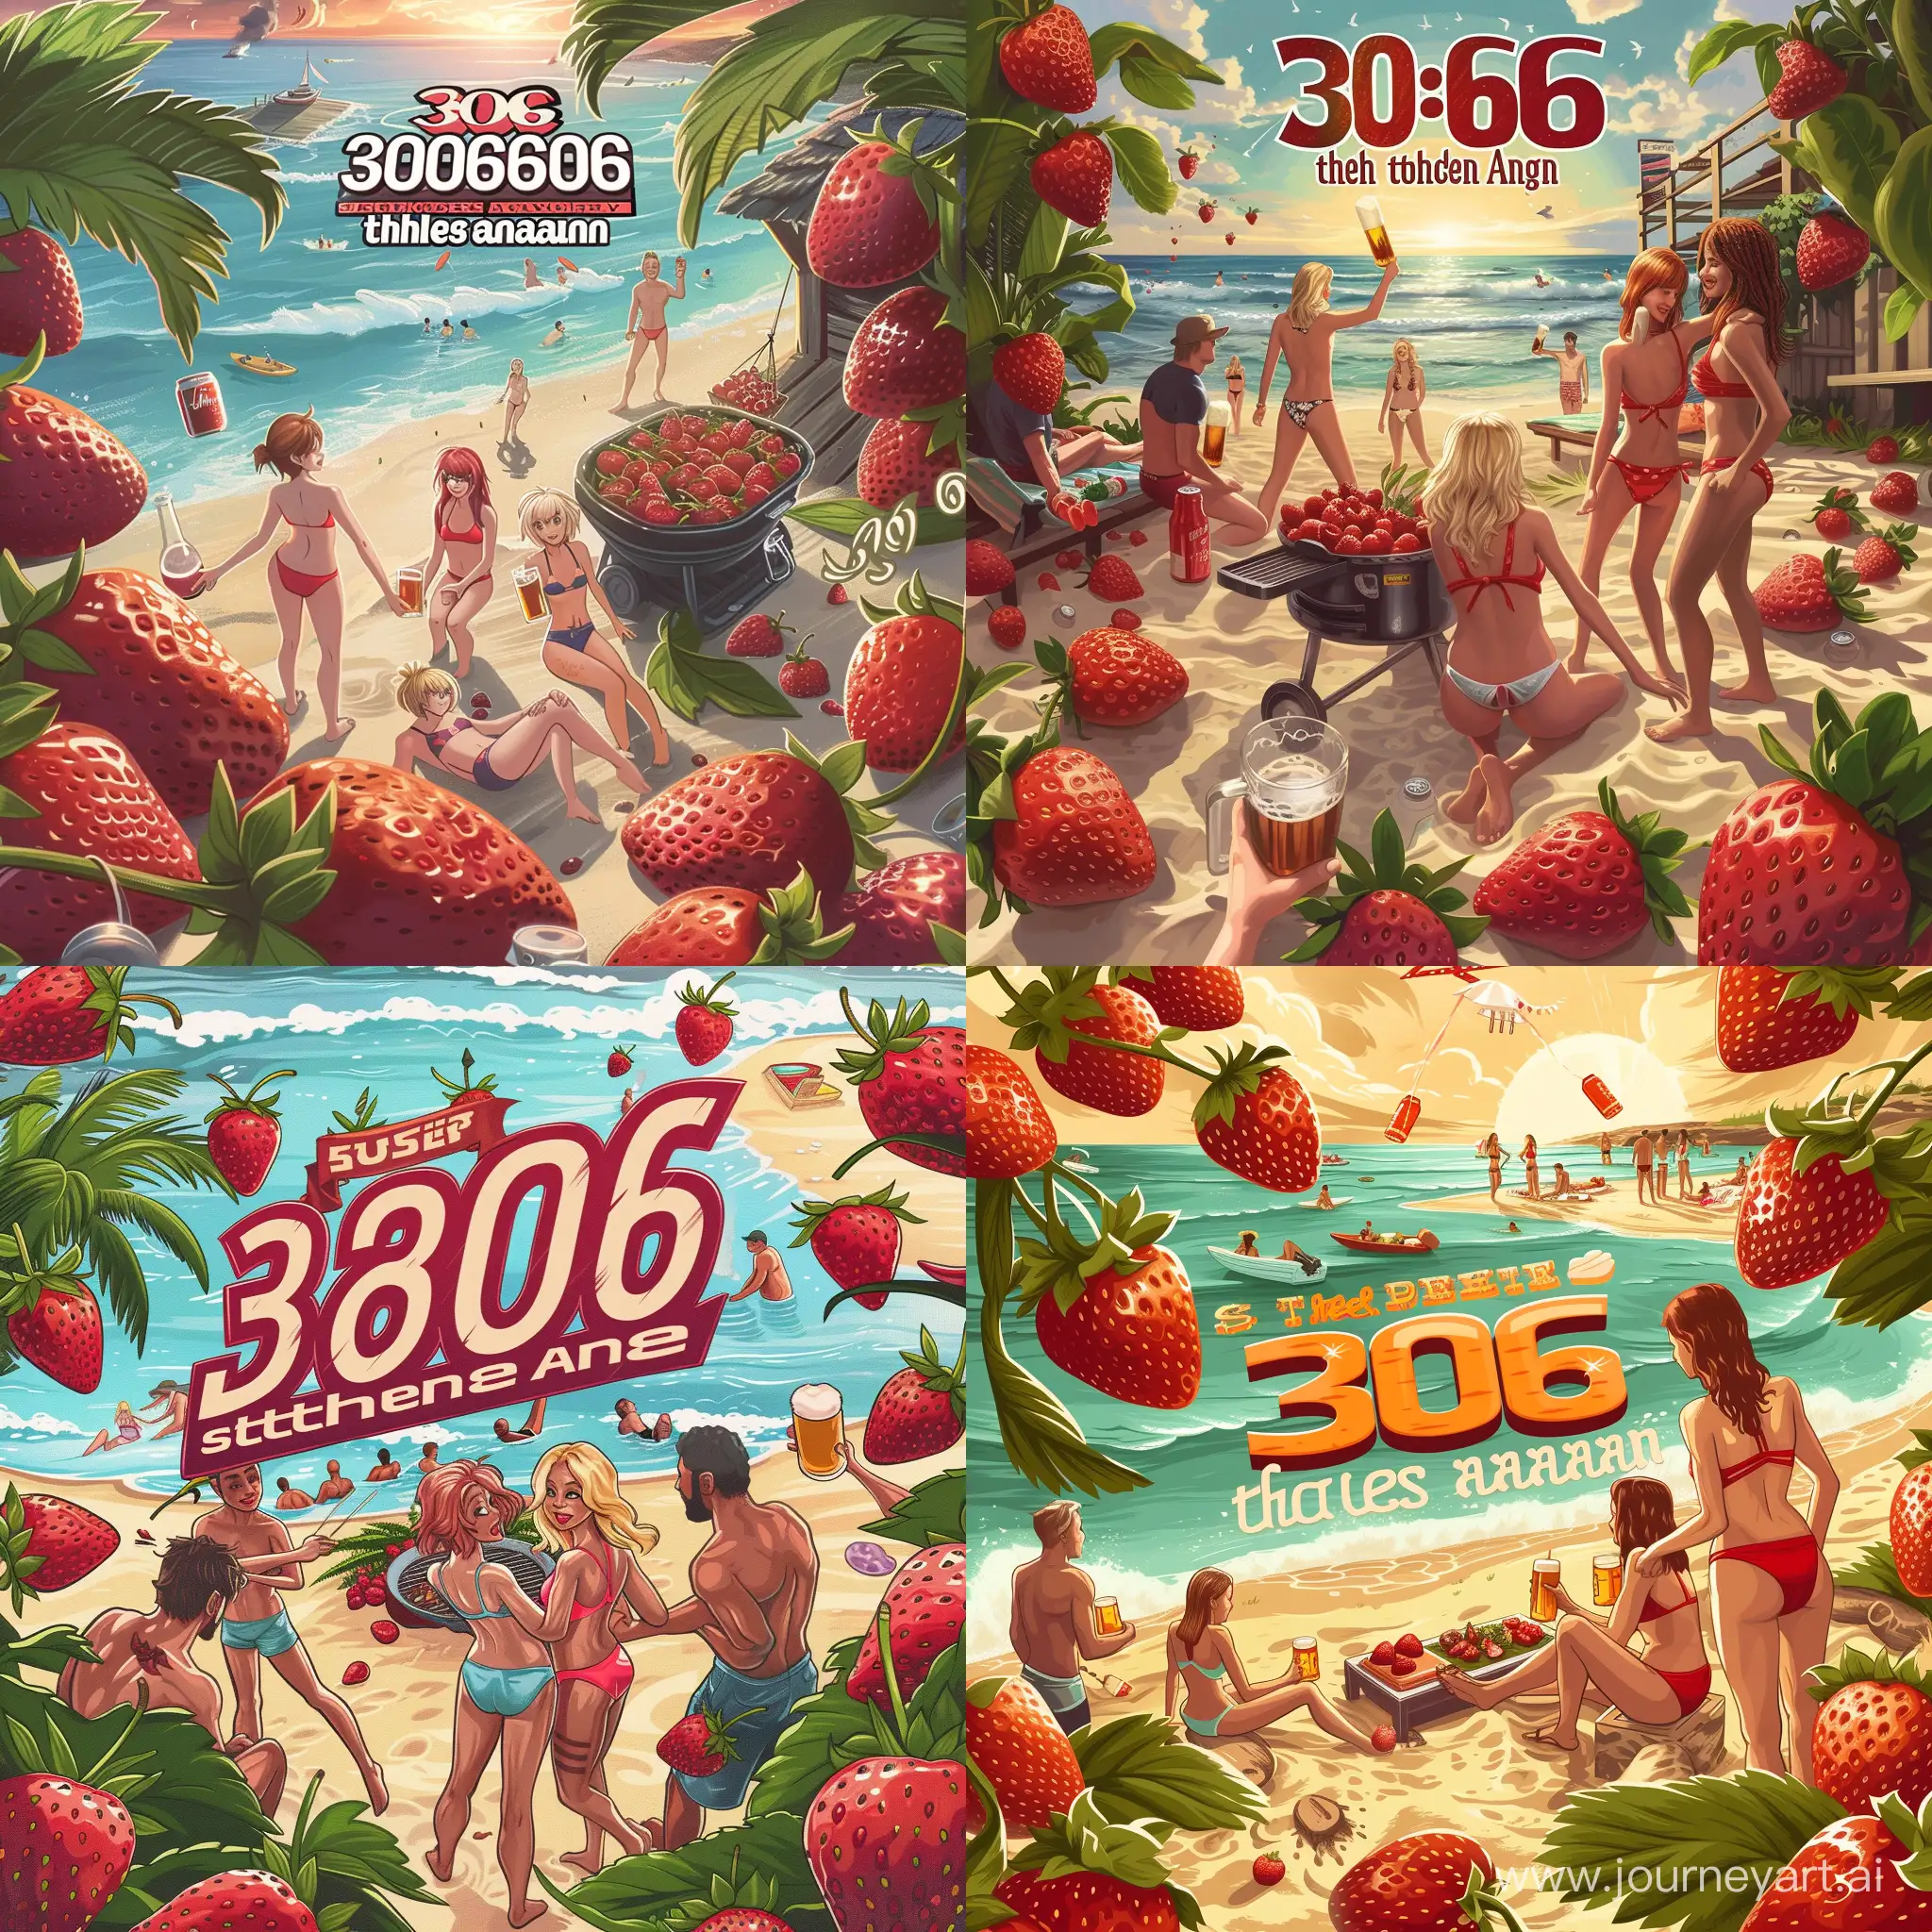 Сделай рекламный баннер с надписью "306 together again", на баннере должно быть пляж, шашлыки, клубника, девушки в купальниках, мужики с пивом, без аниме.